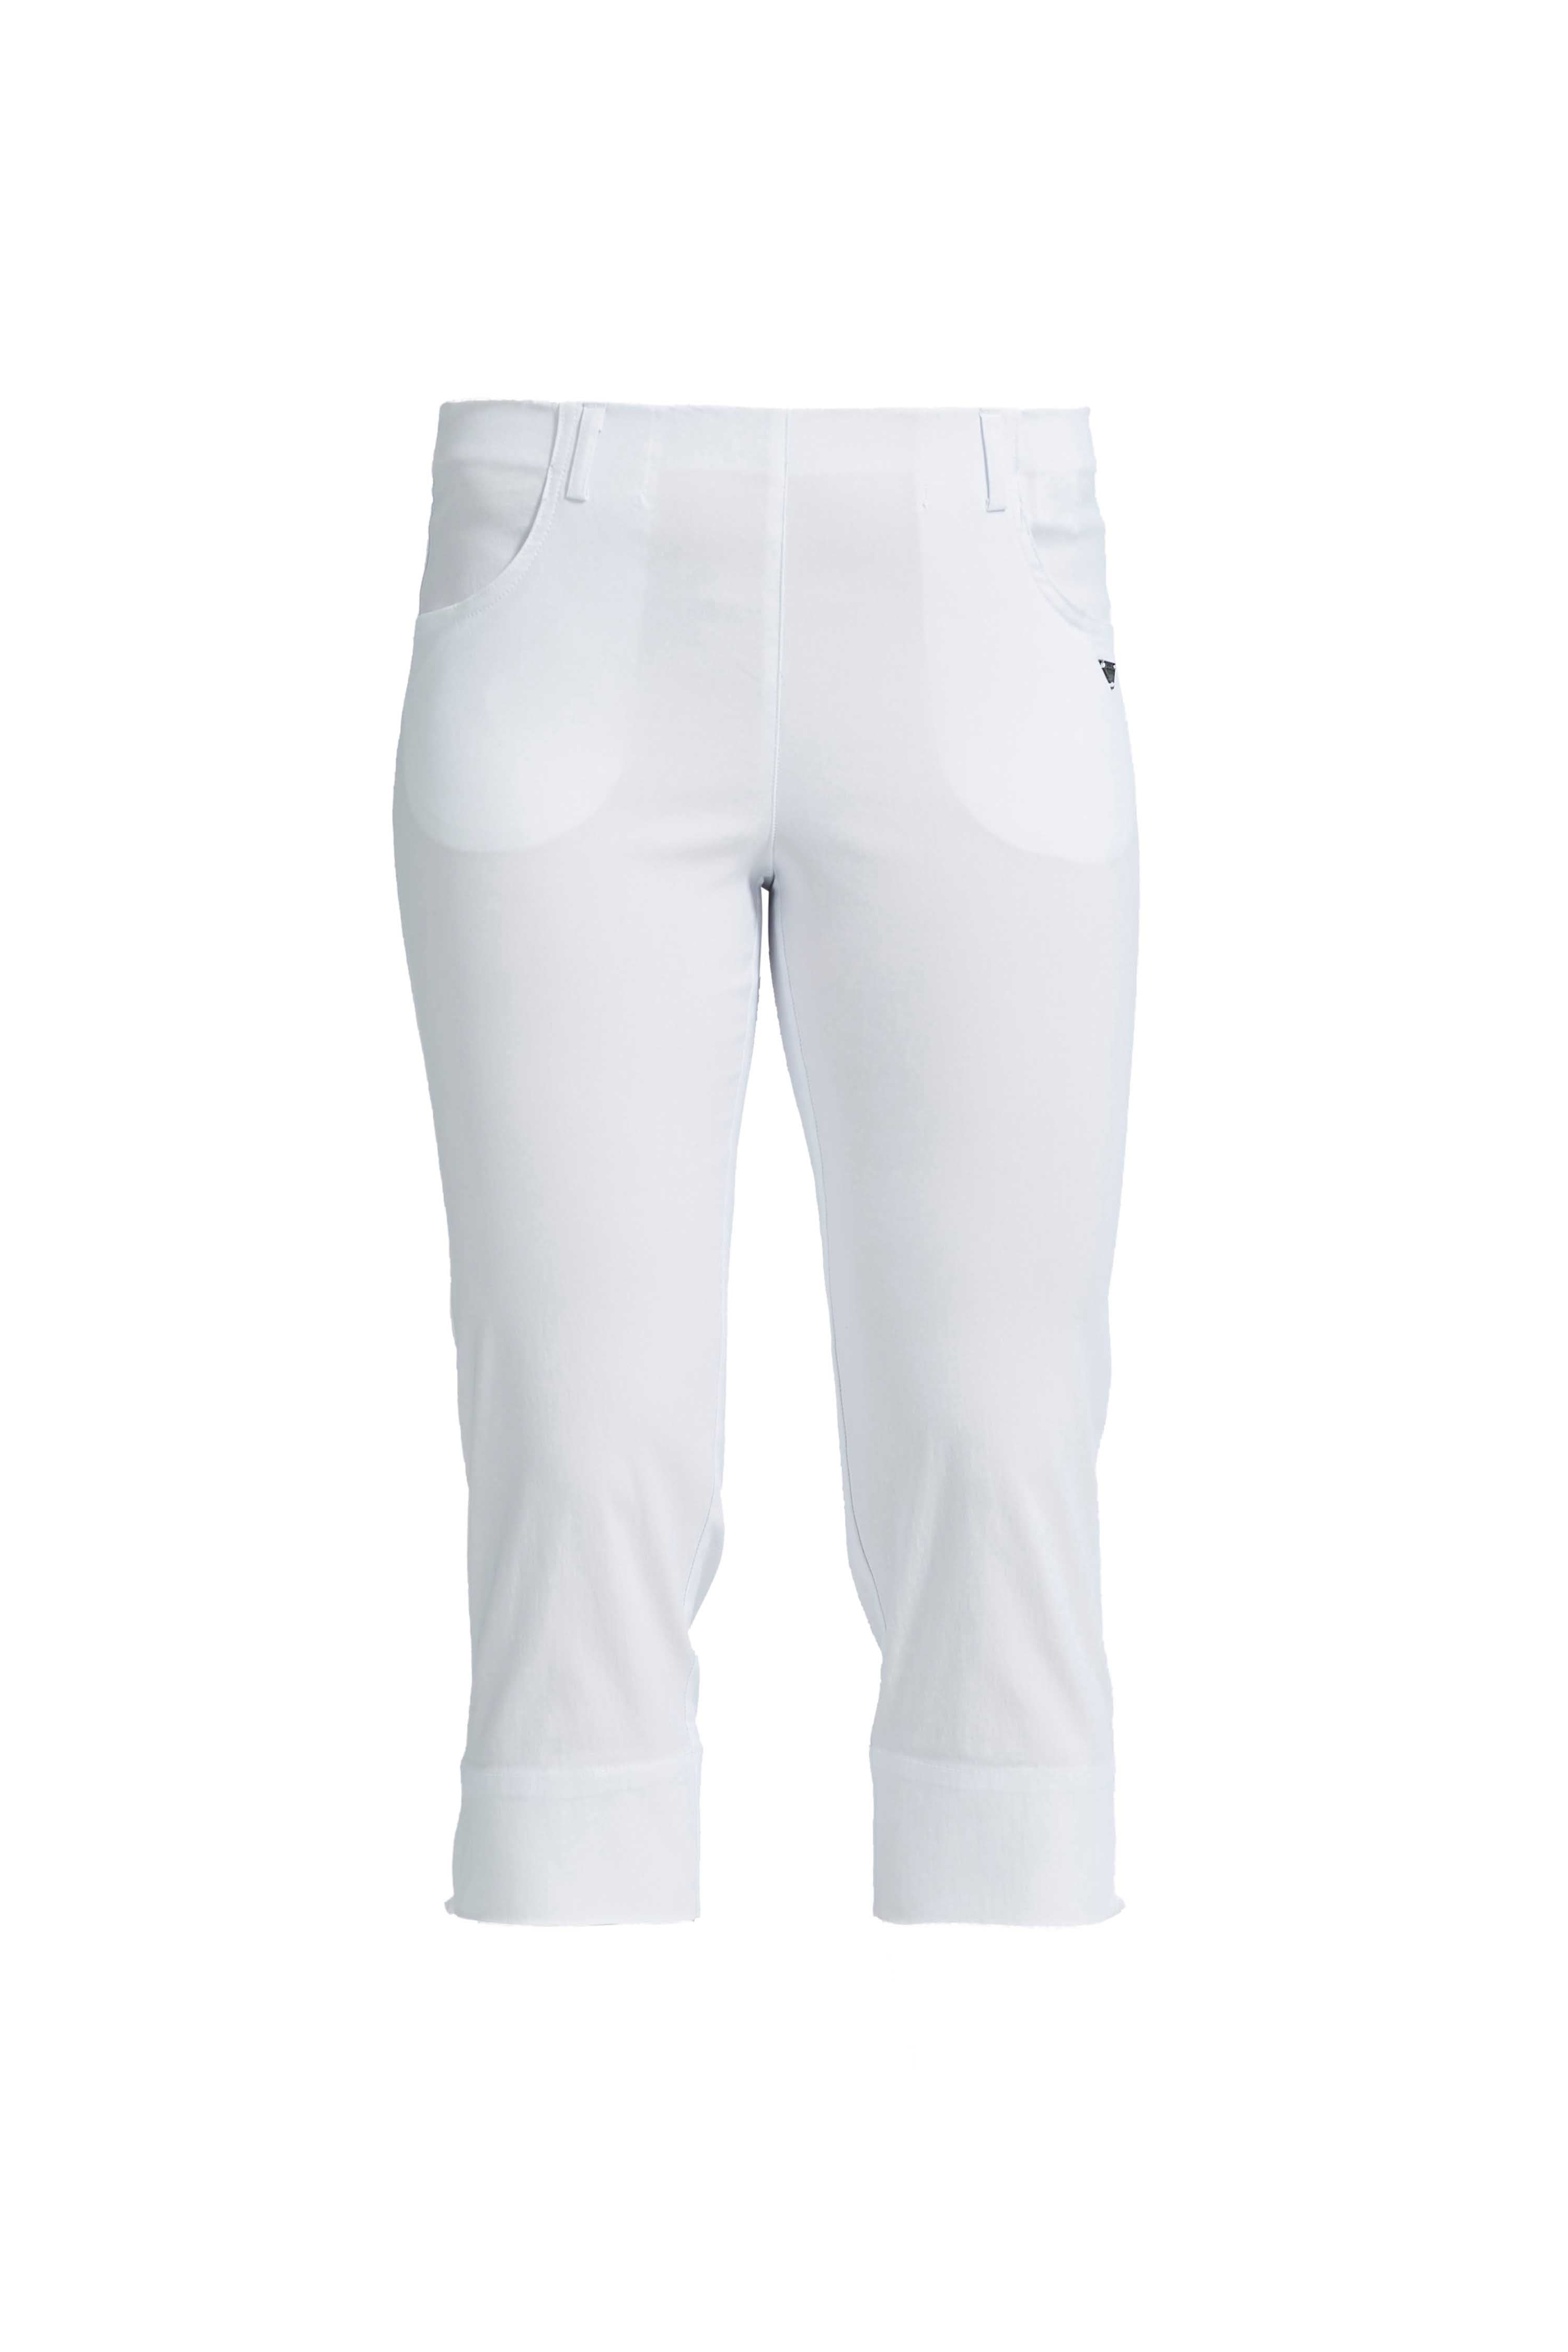 LAURIE  Anabelle Regular Capri Medium Length Trousers REGULAR 10970 White